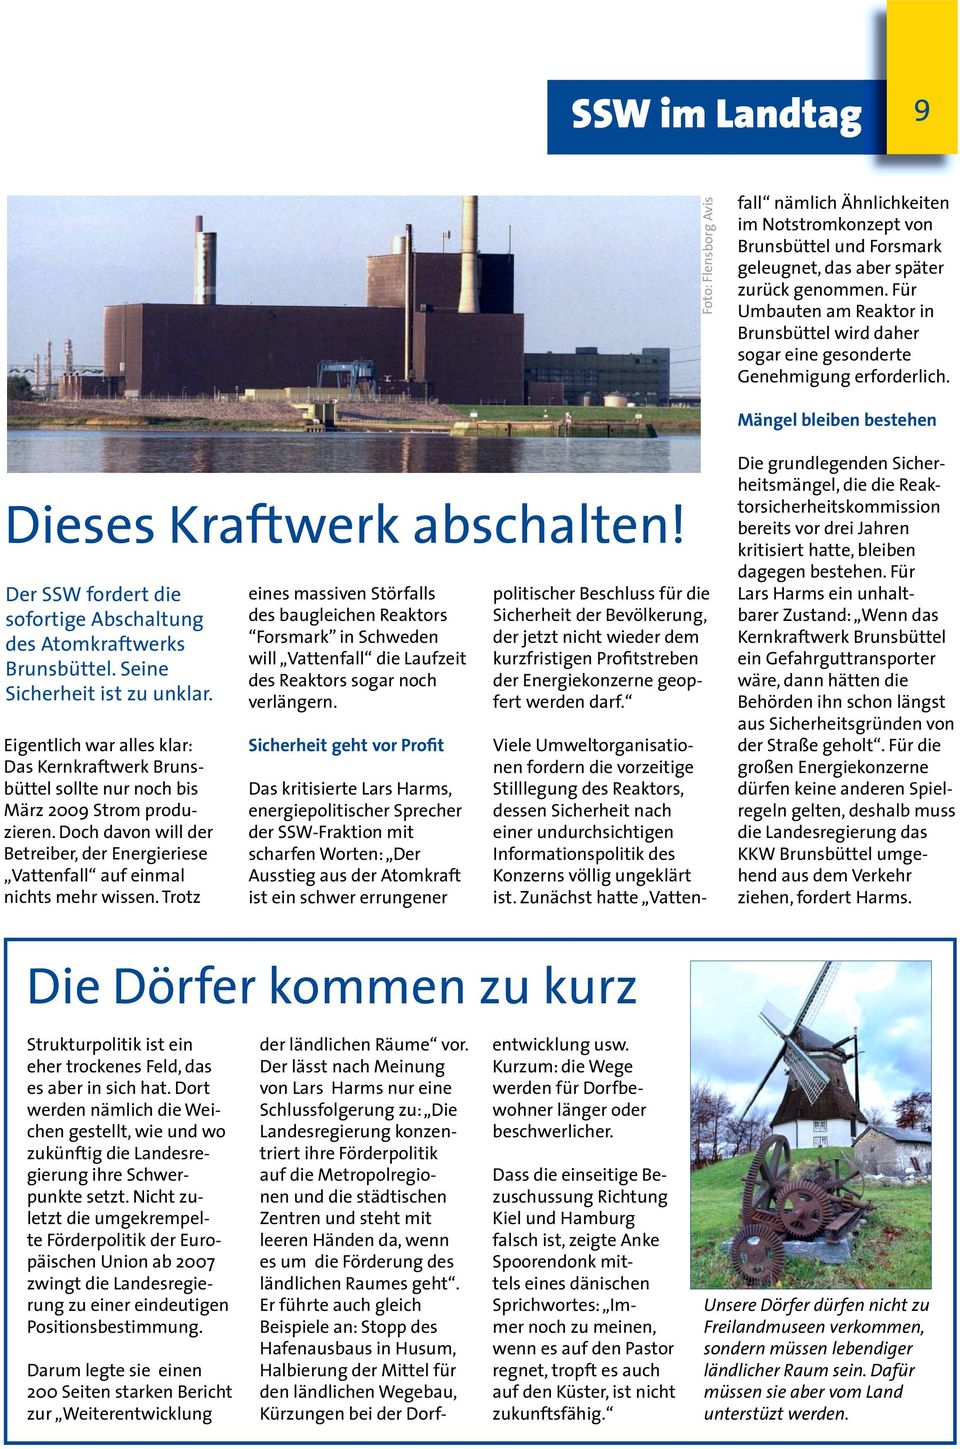 Für Umbauten am Reaktor in Brunsbüttel wird daher sogar eine gesonderte Genehmigung erforderlich. Mängel bleiben bestehen Dieses Kraftwerk abschalten!